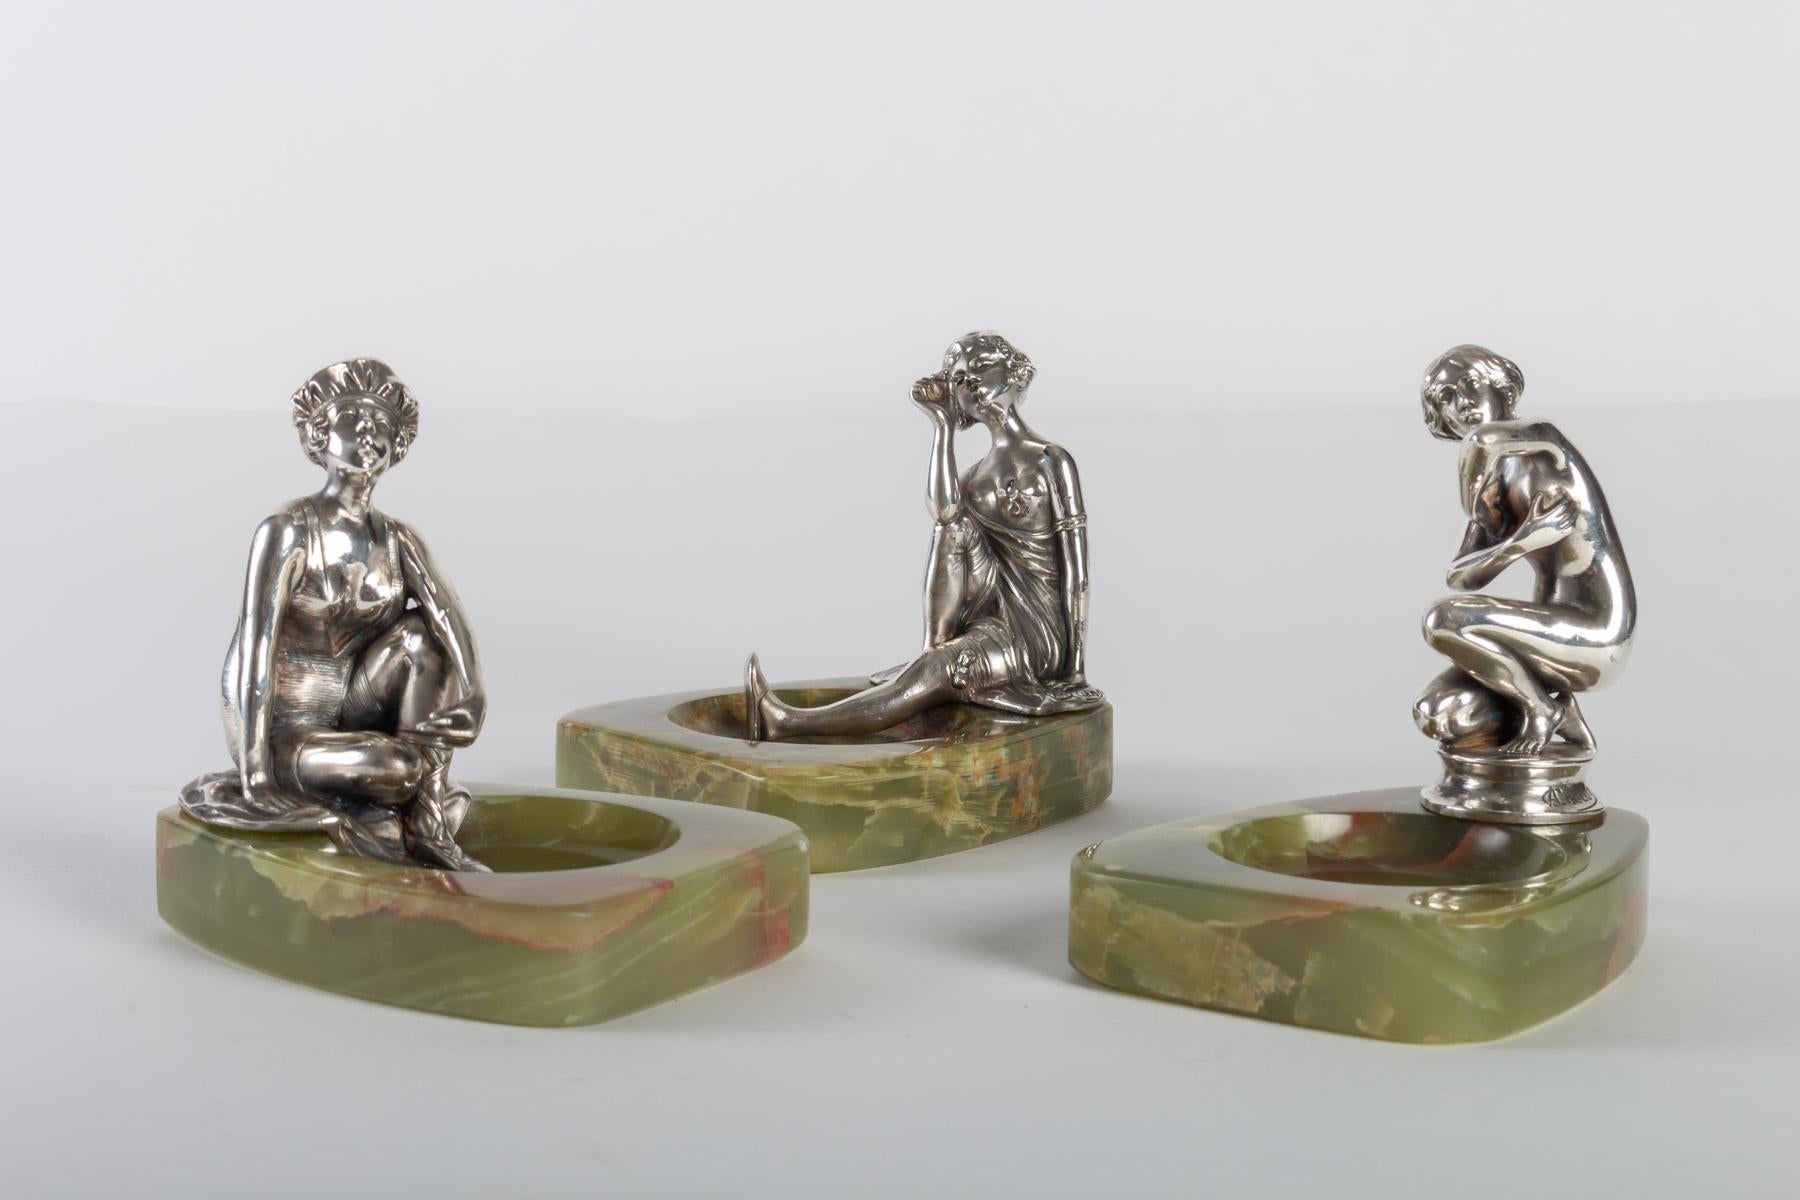 3 empty pockets in silver bronze and onyx, Art Nouveau, 1900
Measures: H 15cm, W 12cm, D 10cm.